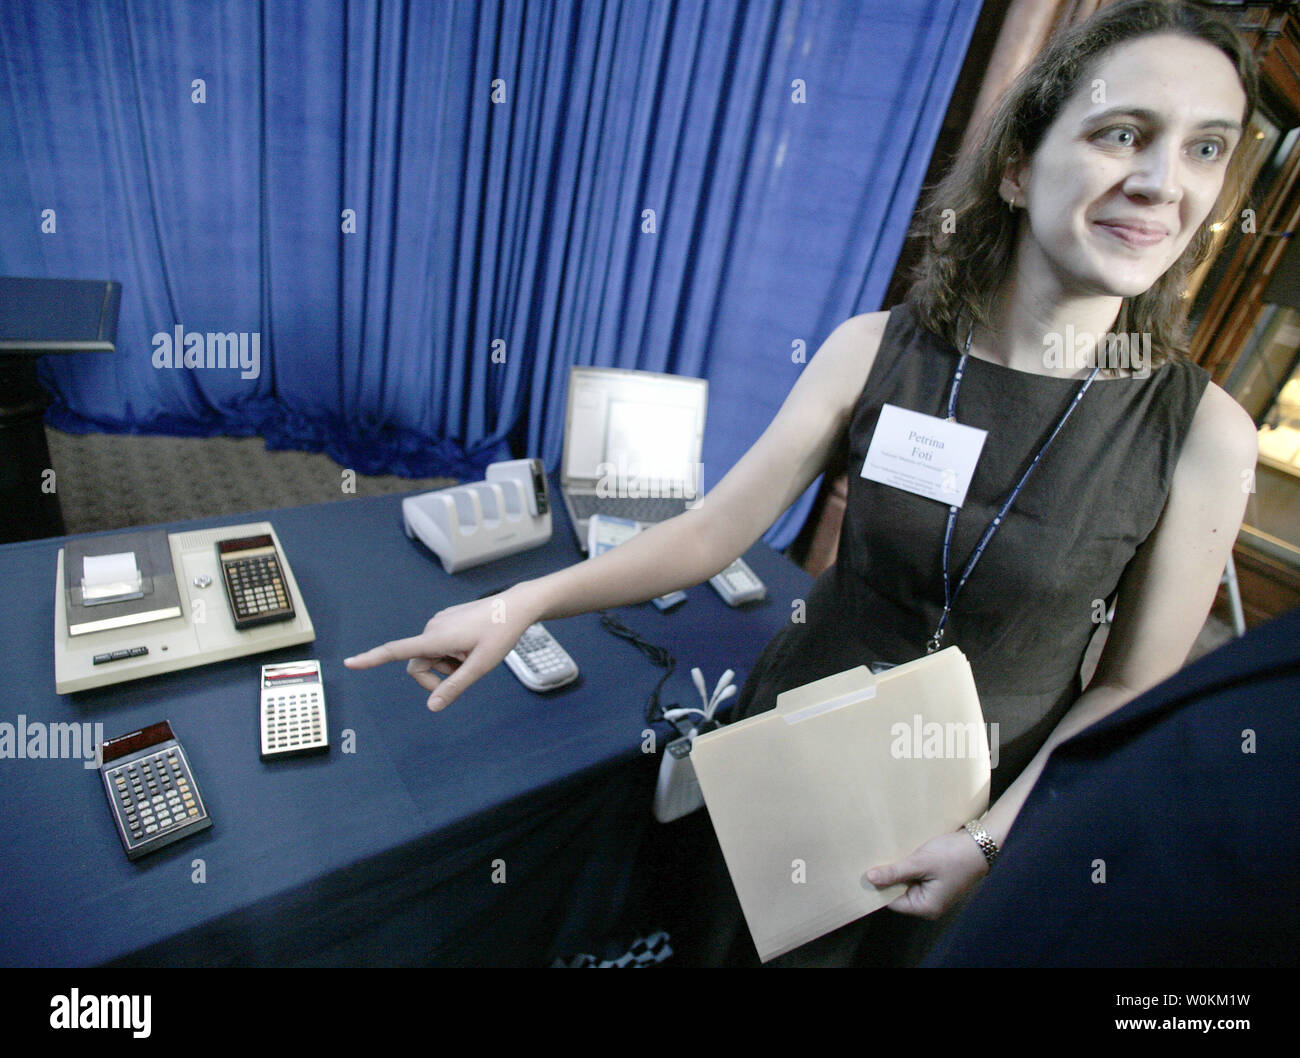 Petrina Foti vom Nationalen Museum der Amerikanischen Geschichte macht Bemerkungen über mehrere Texas Instruments hand- Rechner sind bei einem Festakt zum 40-jährigen Jubiläum der Erfindung des elektronischen Rechner in Washington am 25. September 2007 zu markieren angezeigt. (UPI Foto/Yuri Gripas) Stockfoto